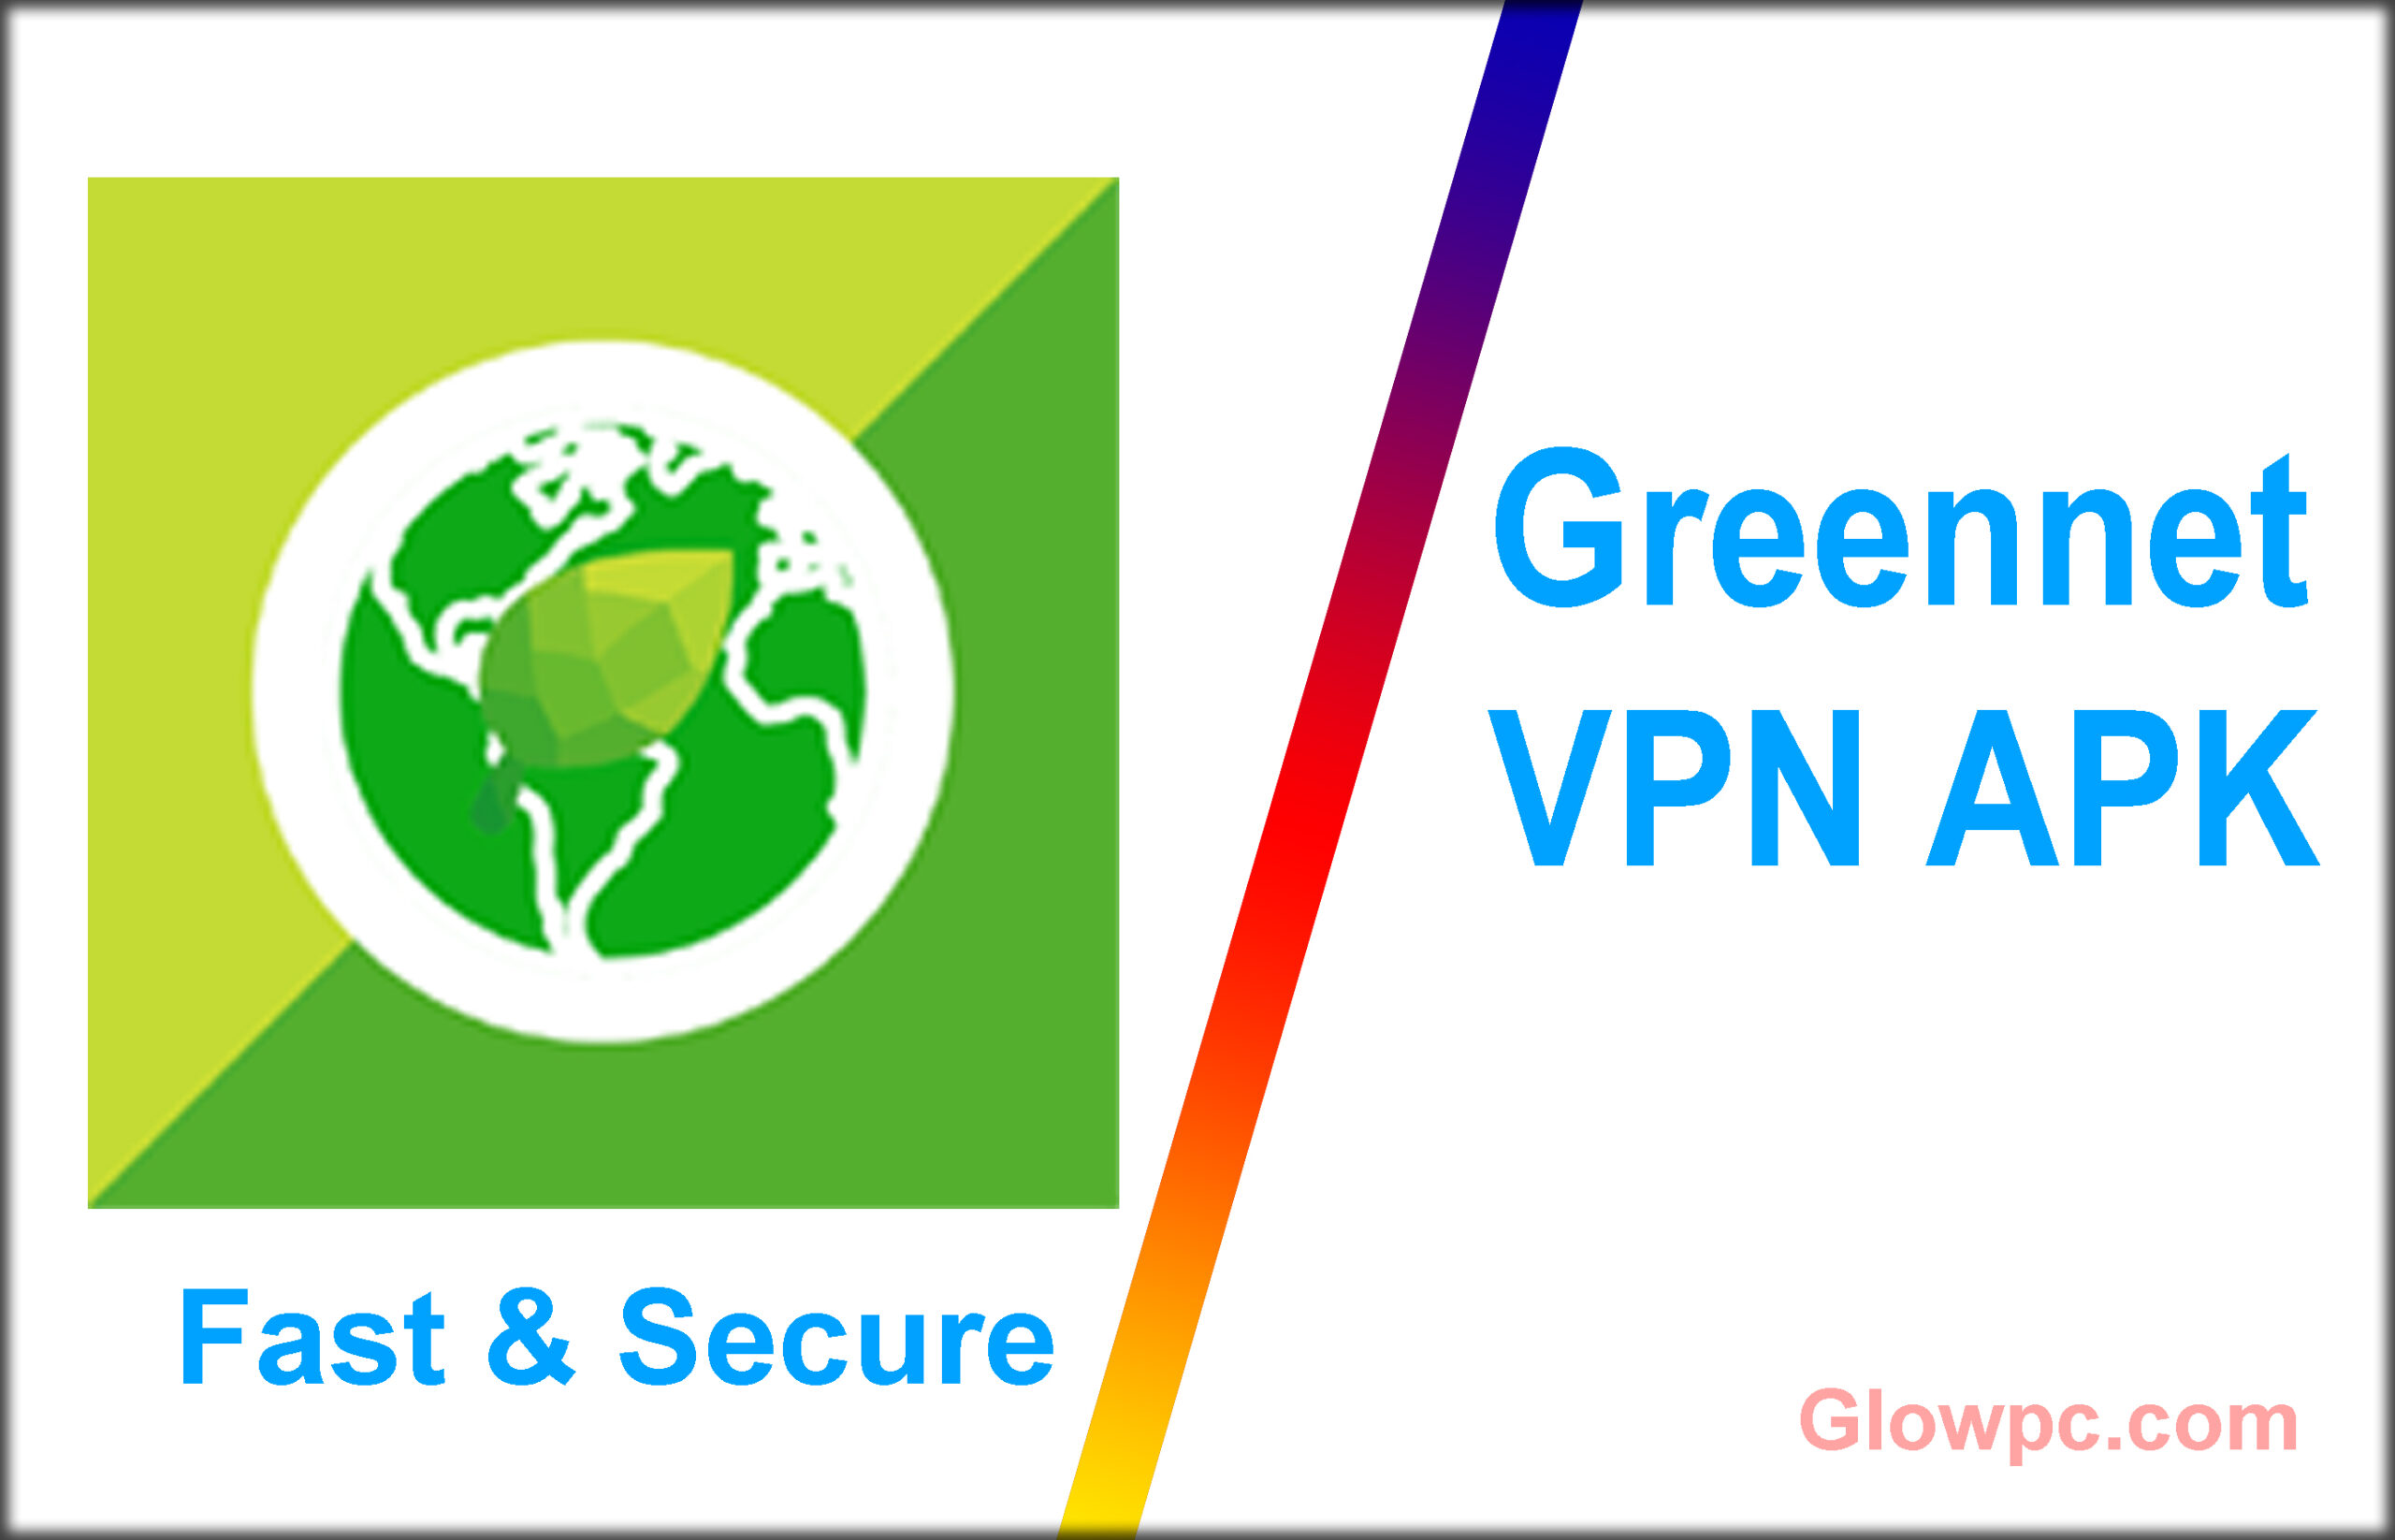 greennet vpn apk download 